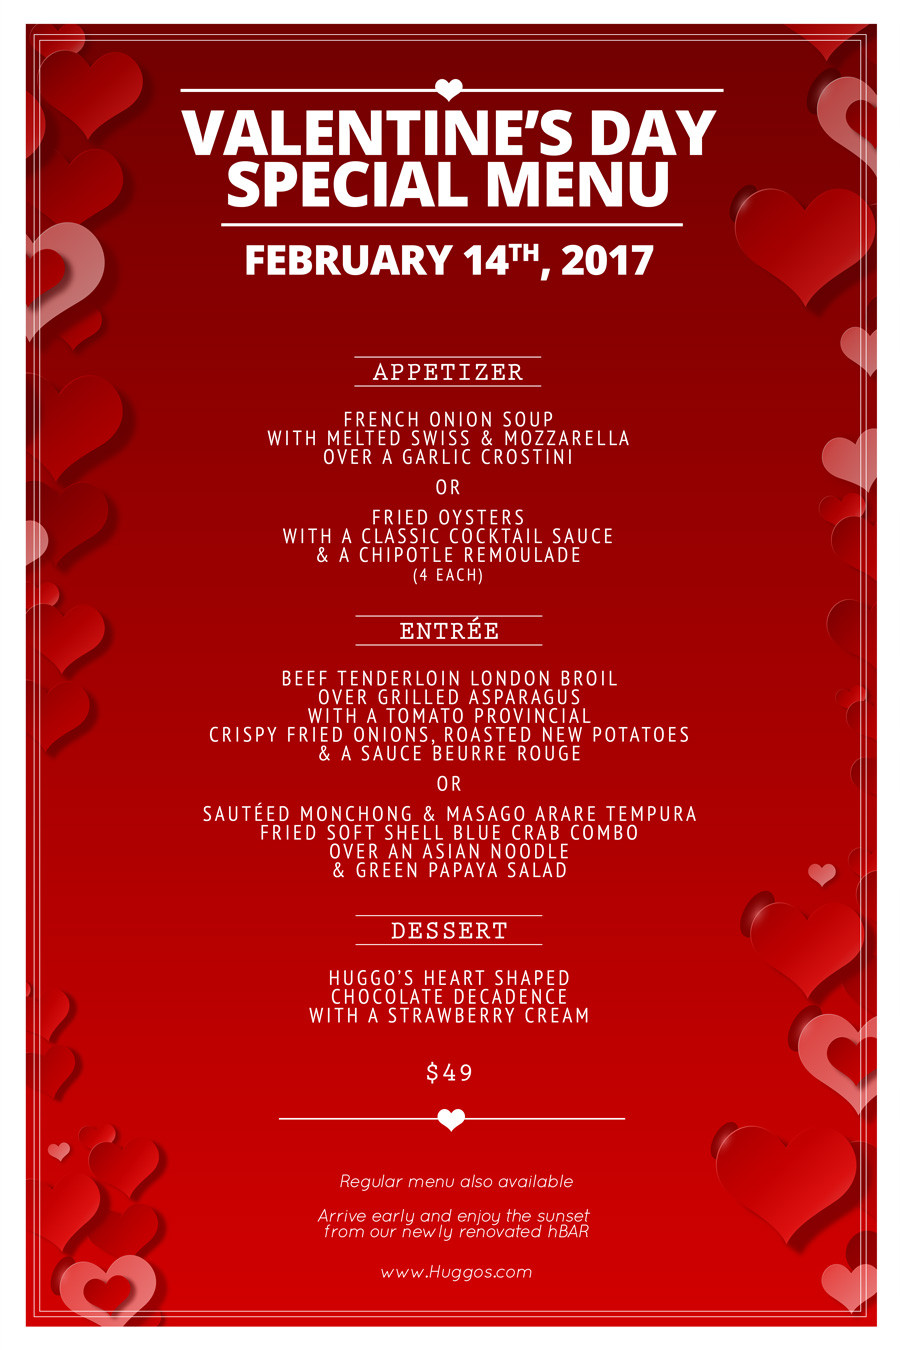 Valentines Day Dinner Restaurant
 Celebrate Love in Kona Huggos Fine Dining